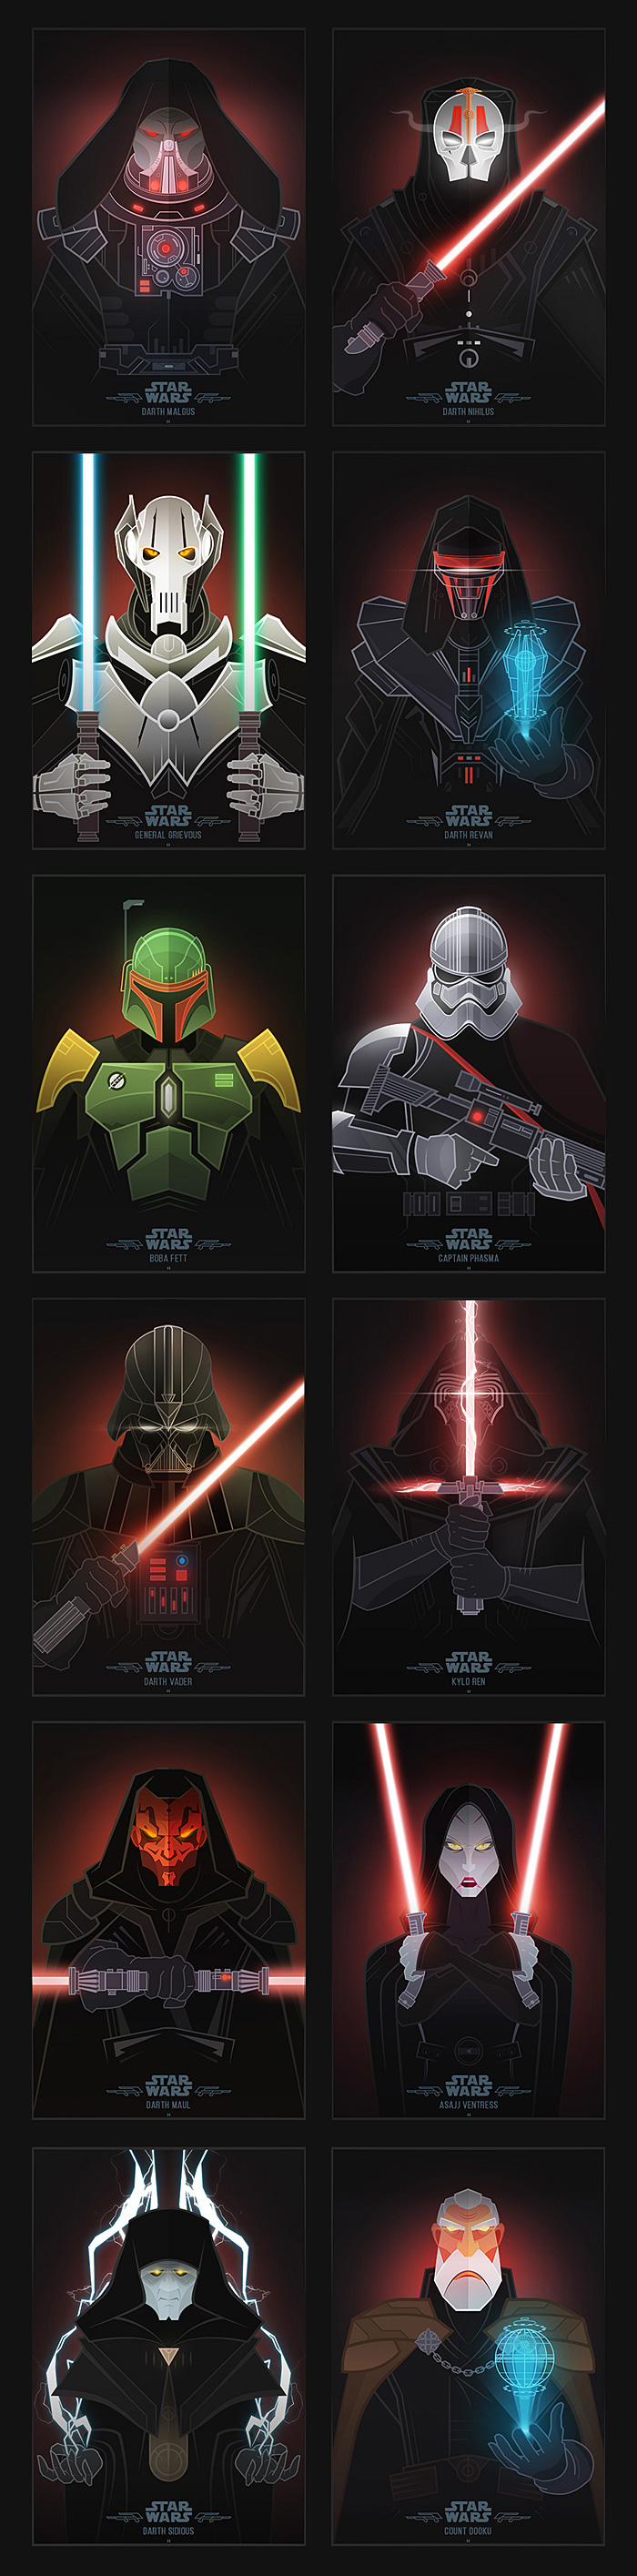 Star Wars Villains Illustrations